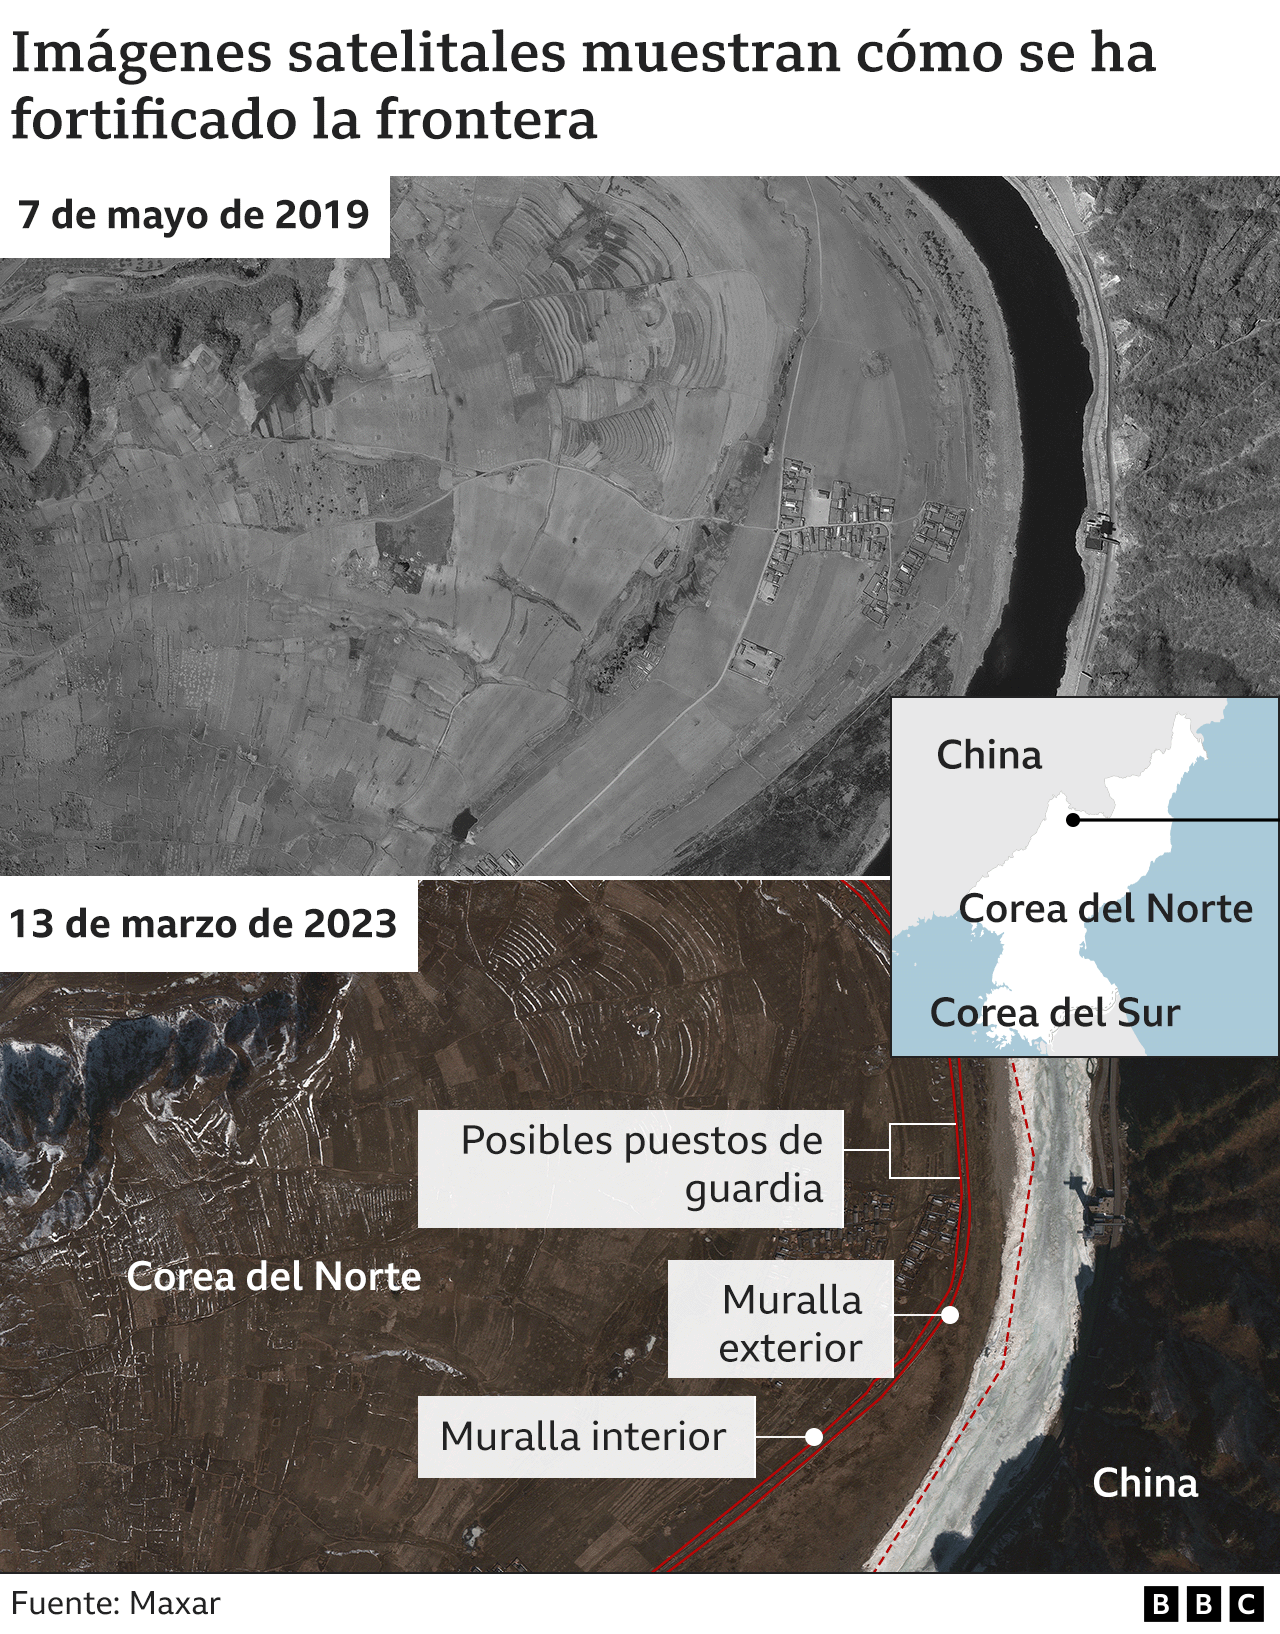 Imágenes satelitales muestran cómo se ha fortificado la frontera entre Corea del Norte y Corea del Sur